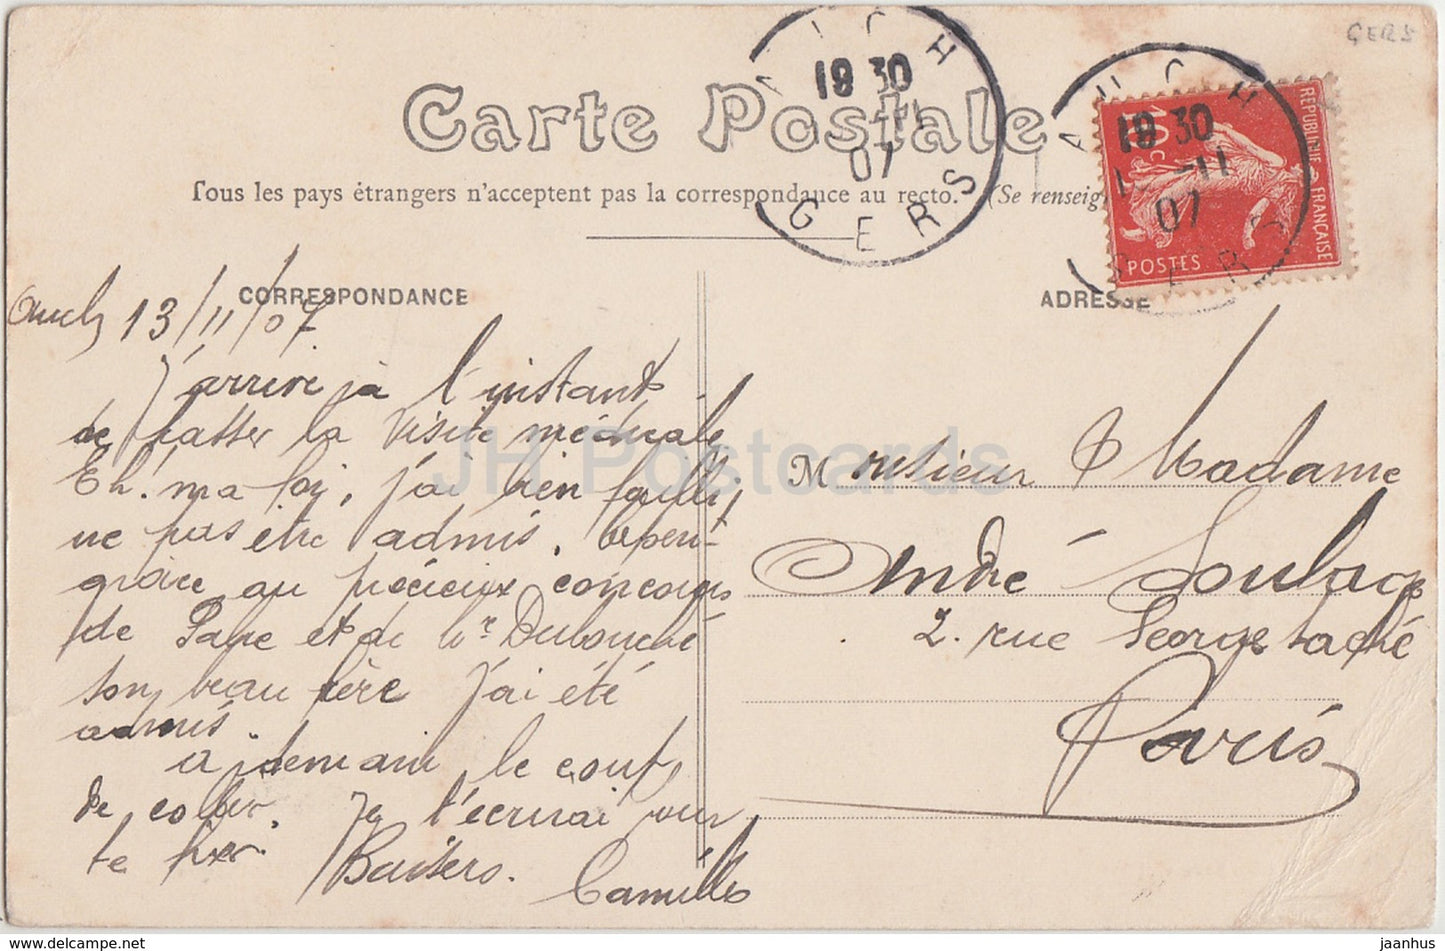 Auch - Bibliothèque - bibliothèque - 1907 - carte postale ancienne - France - occasion